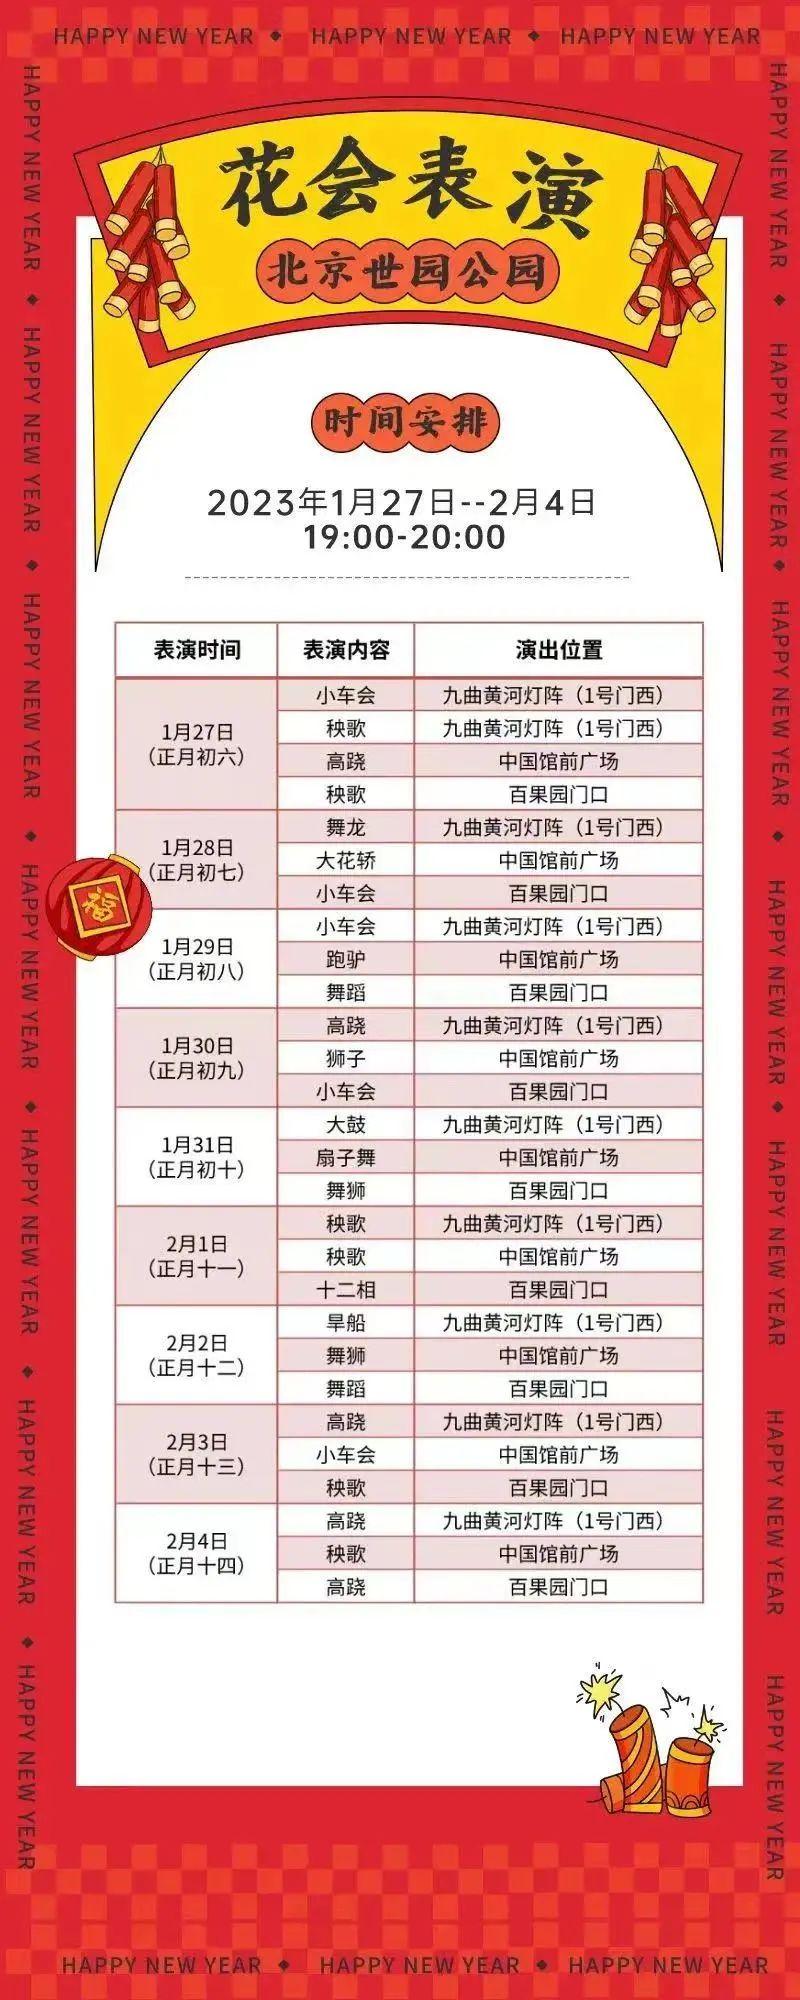 2023年北京世园公园花灯节游玩指南 附时间、路线、节目等信息